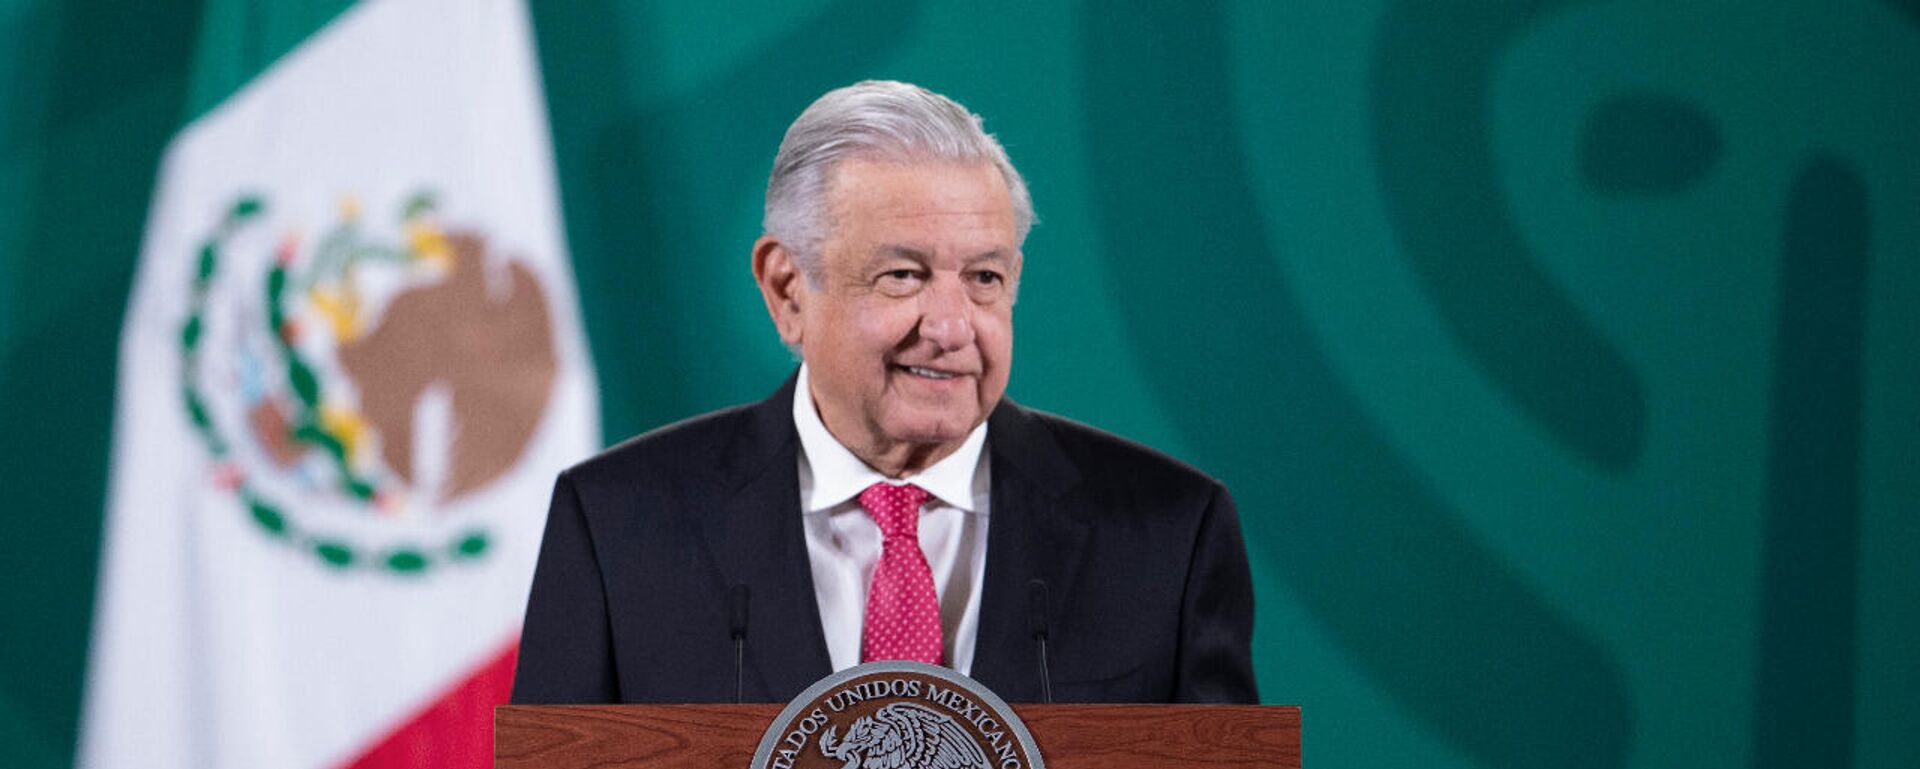 Andrés Manuel López Obrador, presidente de México - Sputnik Mundo, 1920, 10.11.2021